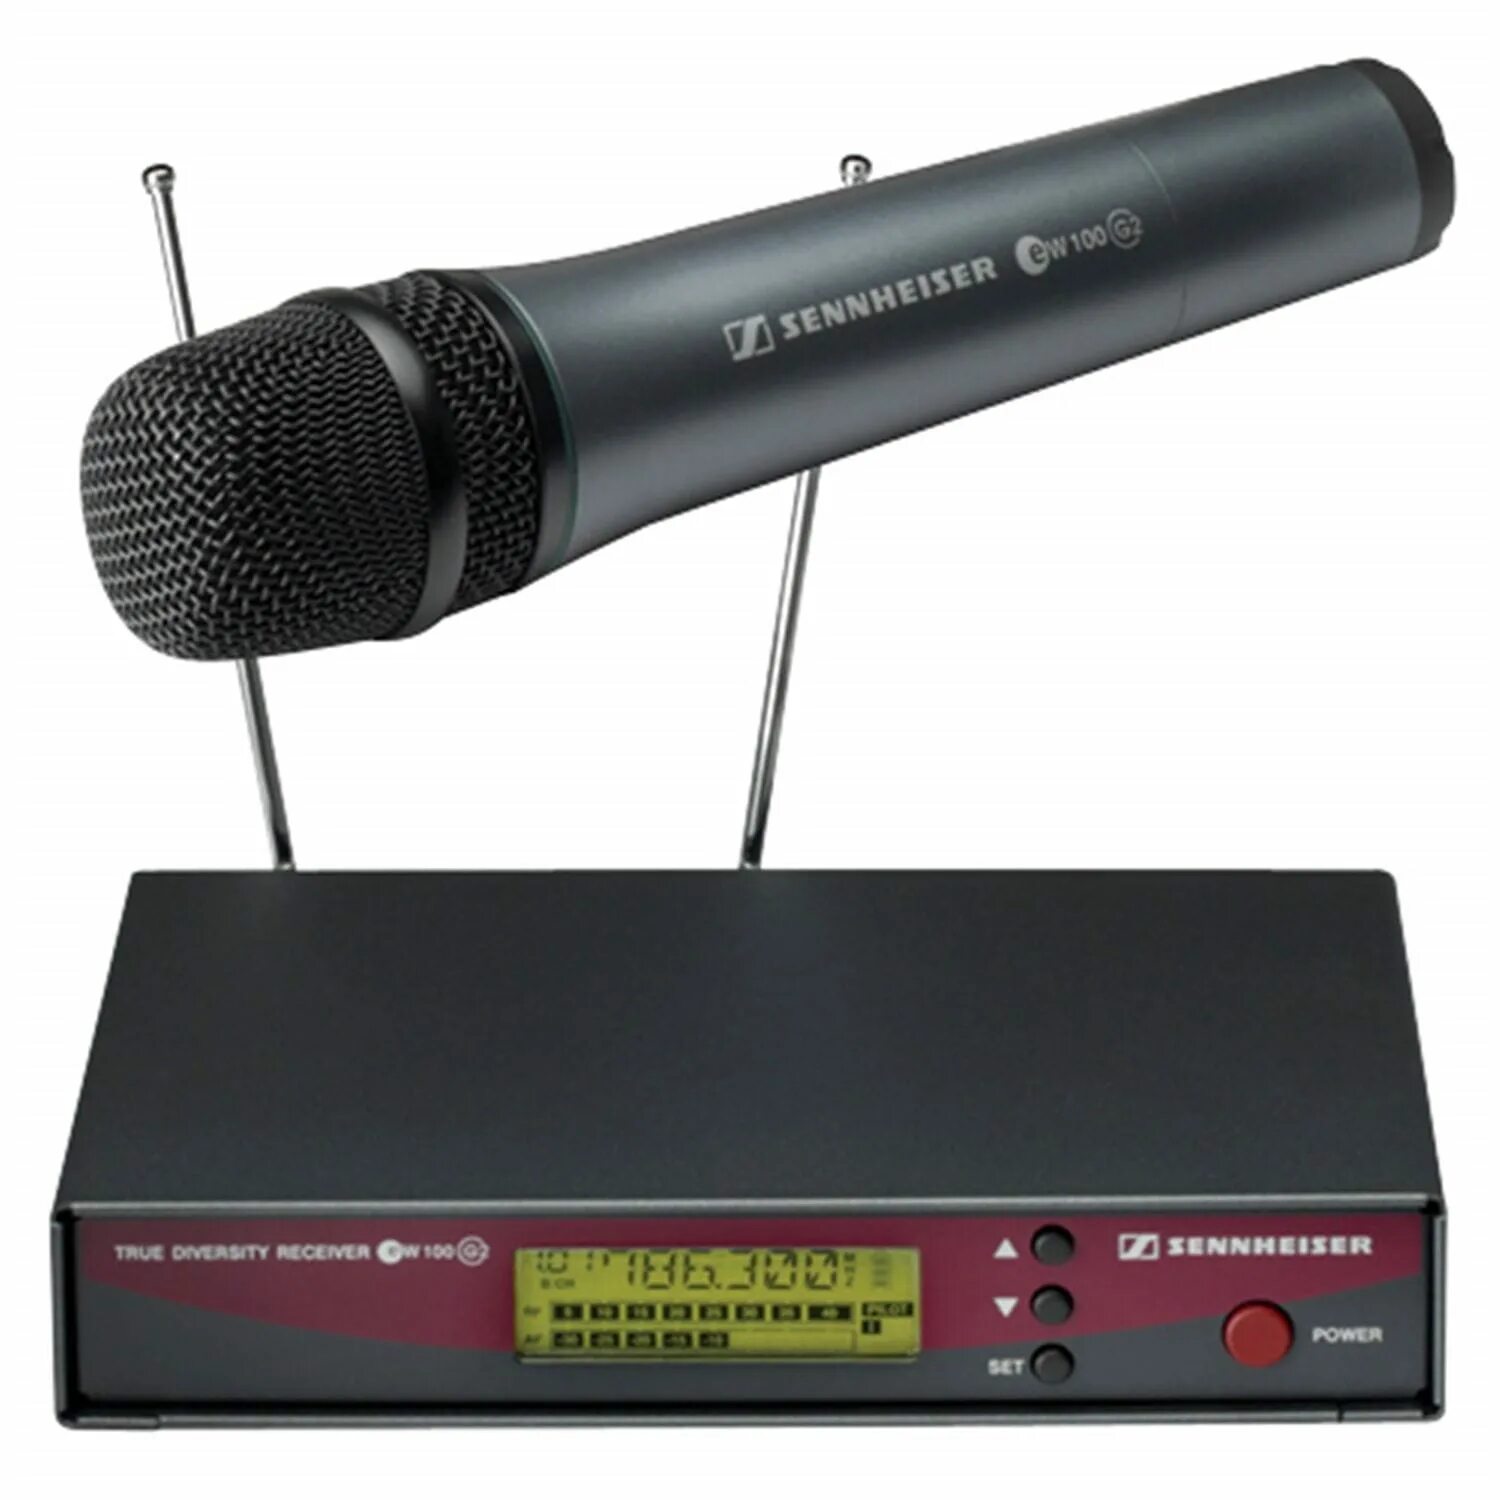 Радиомикрофон цена. Микрофон Синхайзер EW 100. Радиосистема Sennheiser ew135. Микрофон Sennheiser EW 135. Sennheiser Microphone EW 100 g3 135.